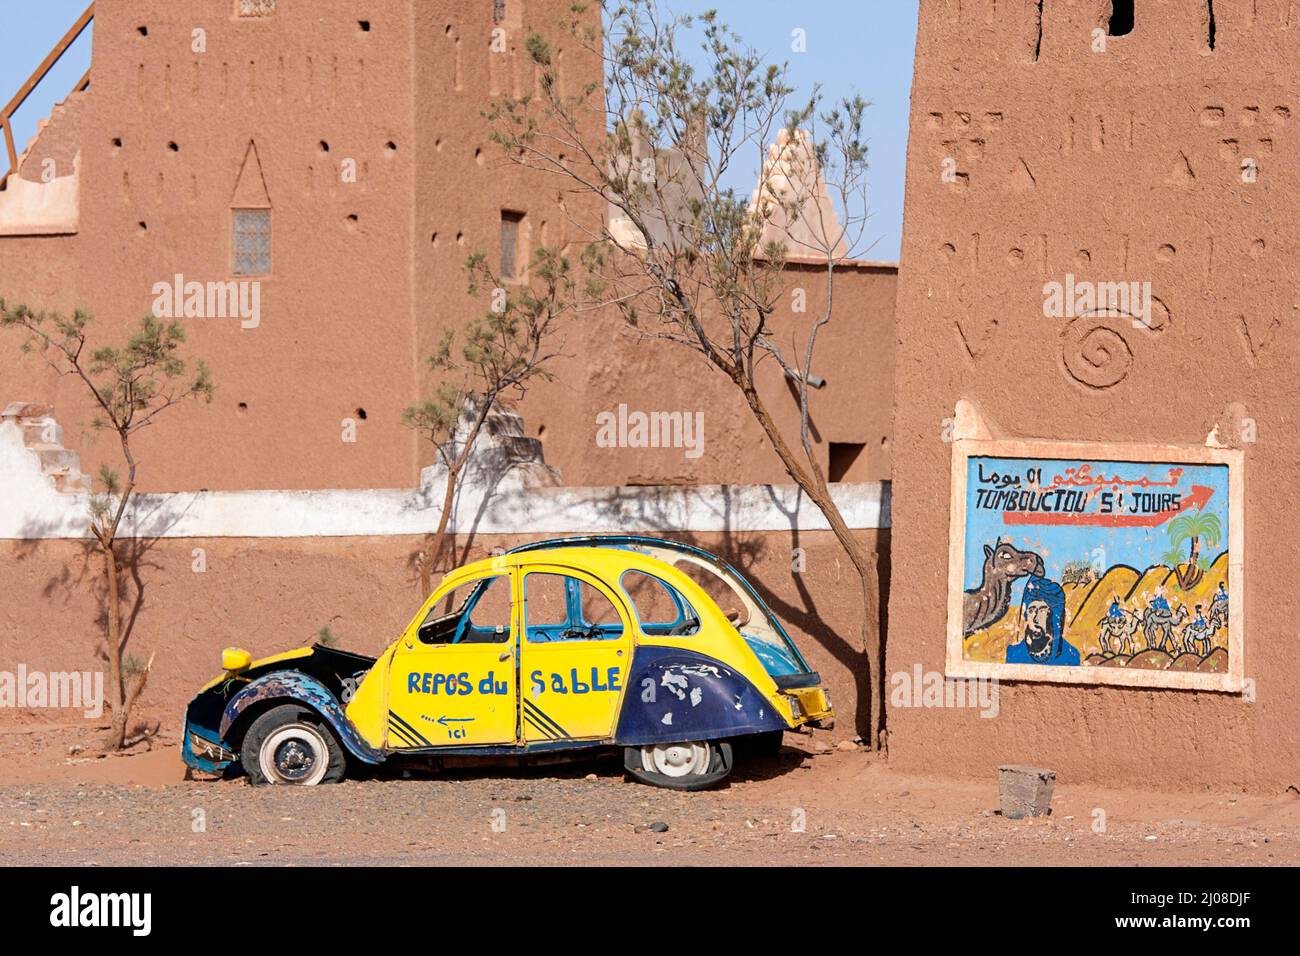 Panneau sur la maison de boue traditionnelle dans le sud du Maroc près de l'ancienne épave de voiture montrant des jours à dos de chameau à Tombouctou, à travers le désert du Sahara dans le centre du Maroc Banque D'Images